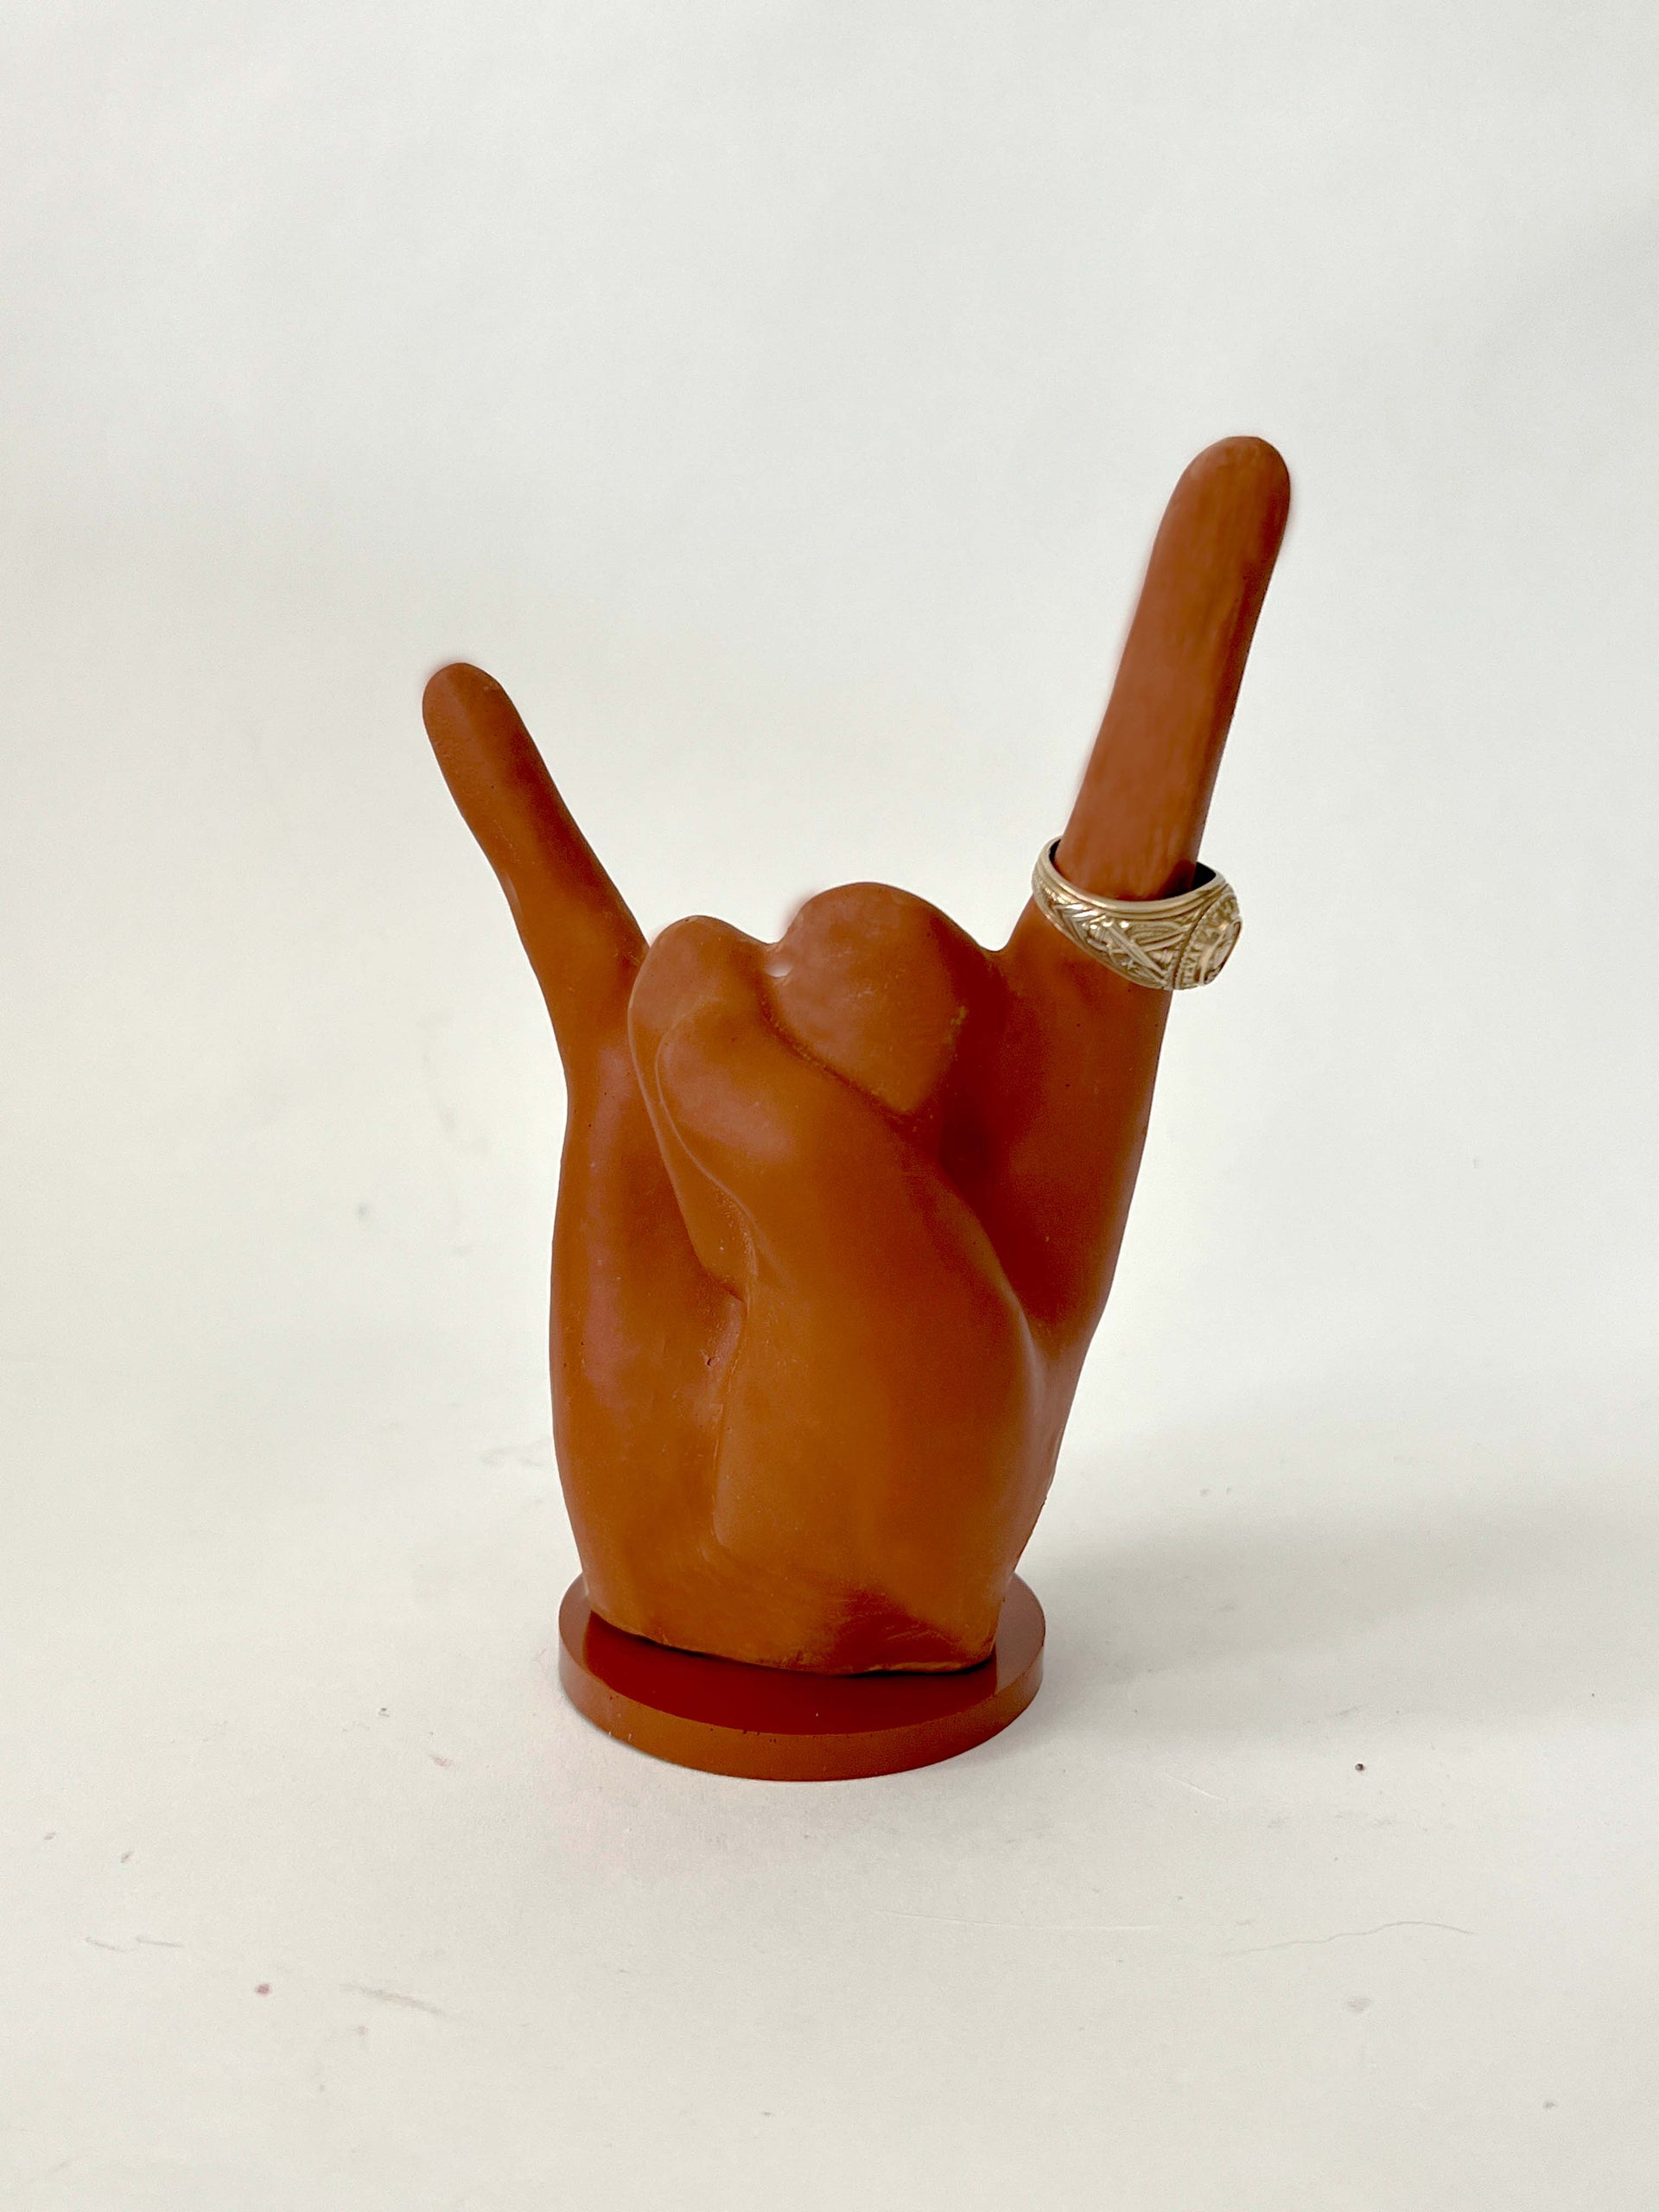 burnt orange ring holder signaling hook 'em horns. Ring holder is situated on a burnt orange base.